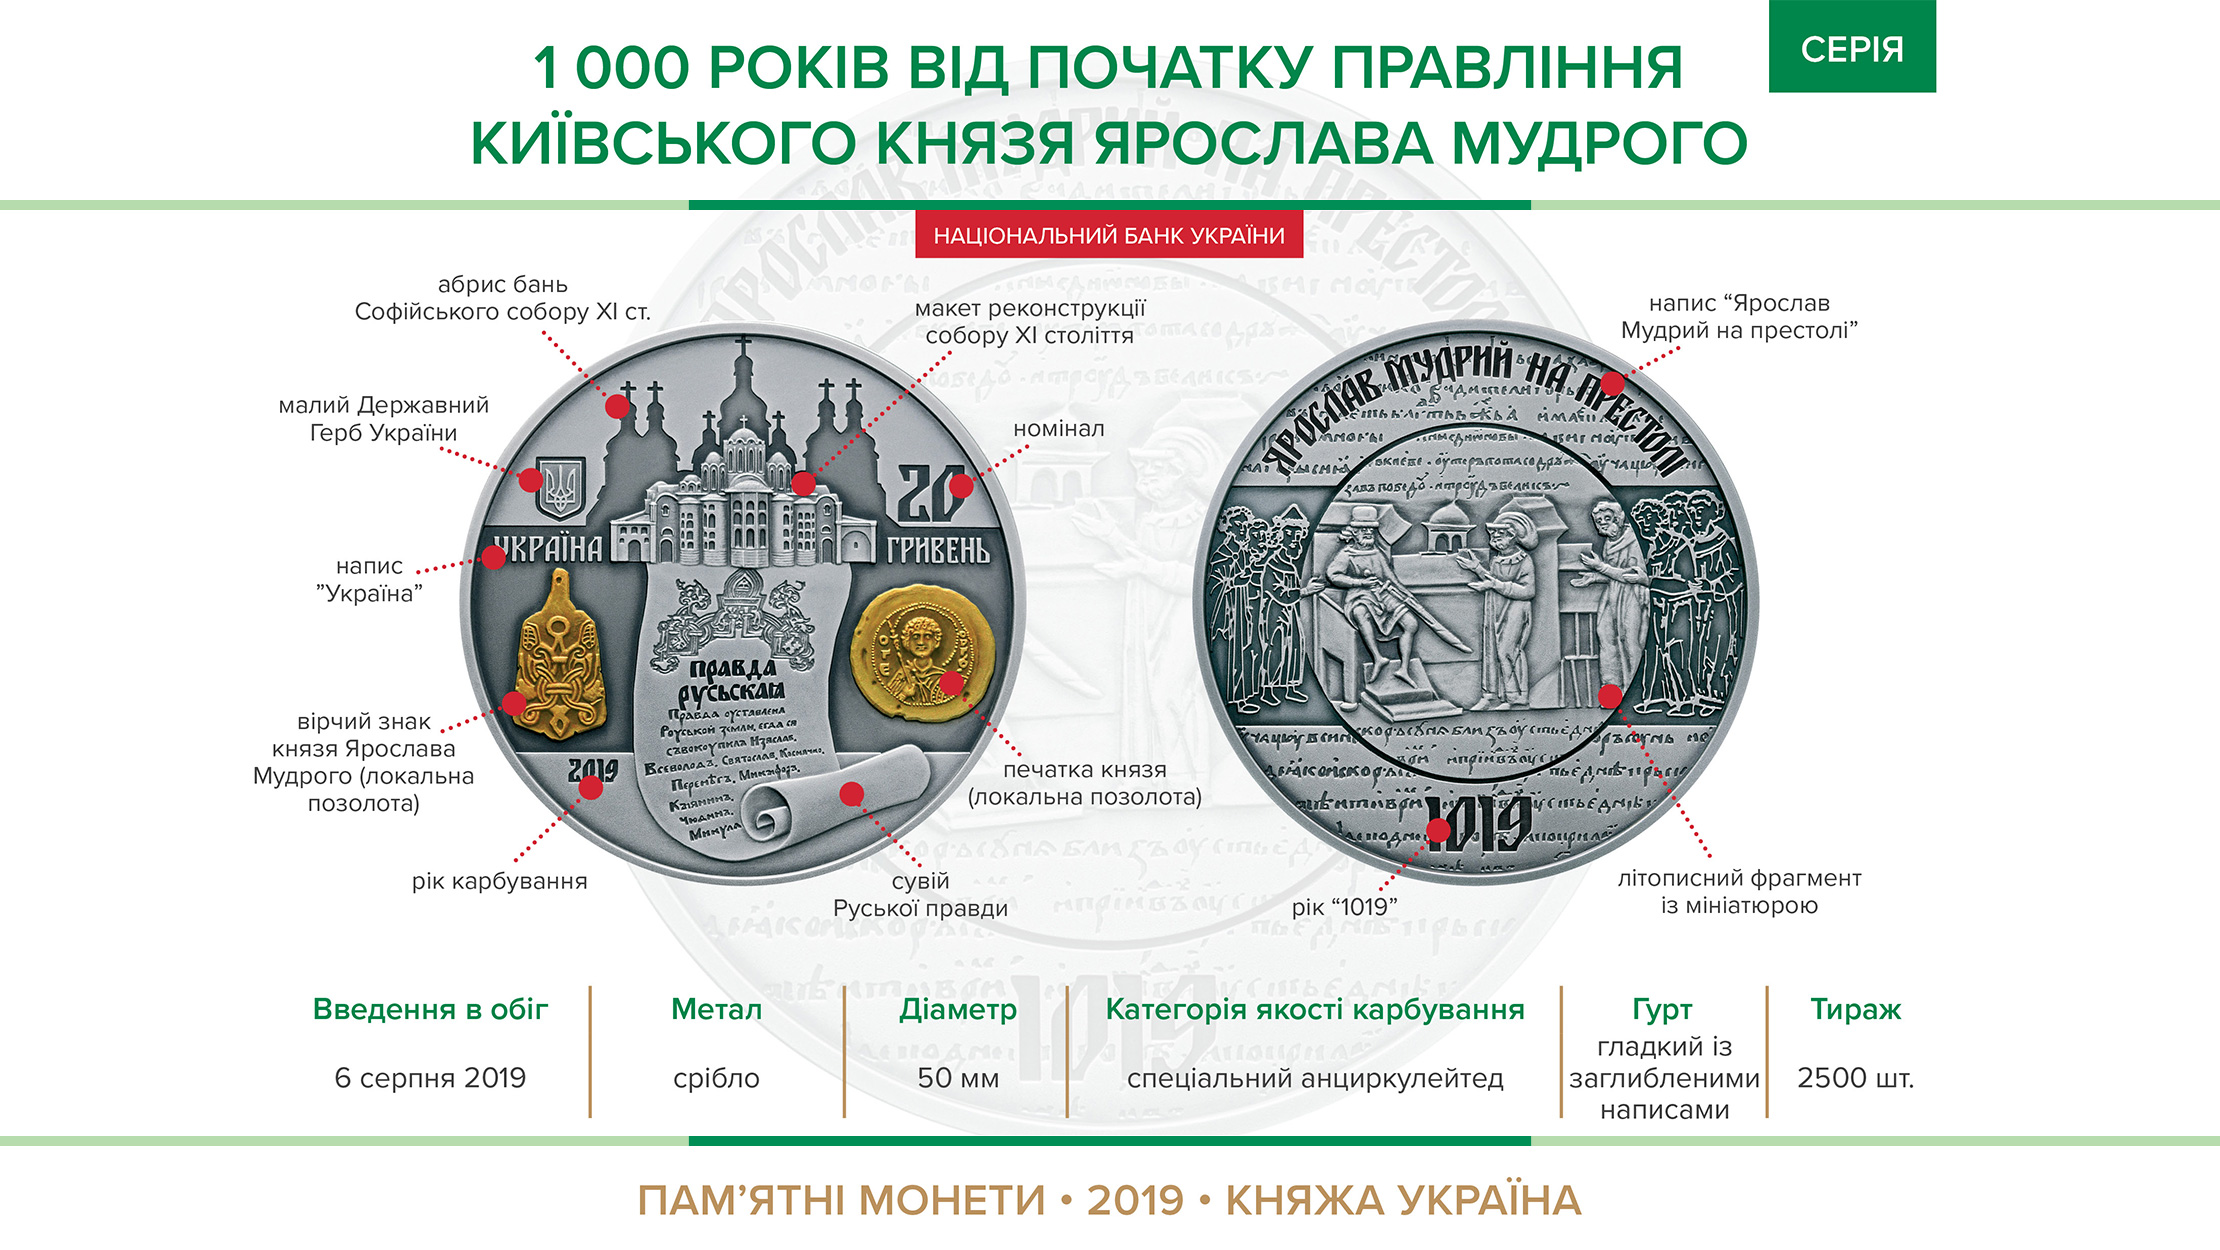 Пам'ятна монета "1000 років від початку правління київського князя Ярослава Мудрого" вводиться в обіг з  6 серпня 2019 року